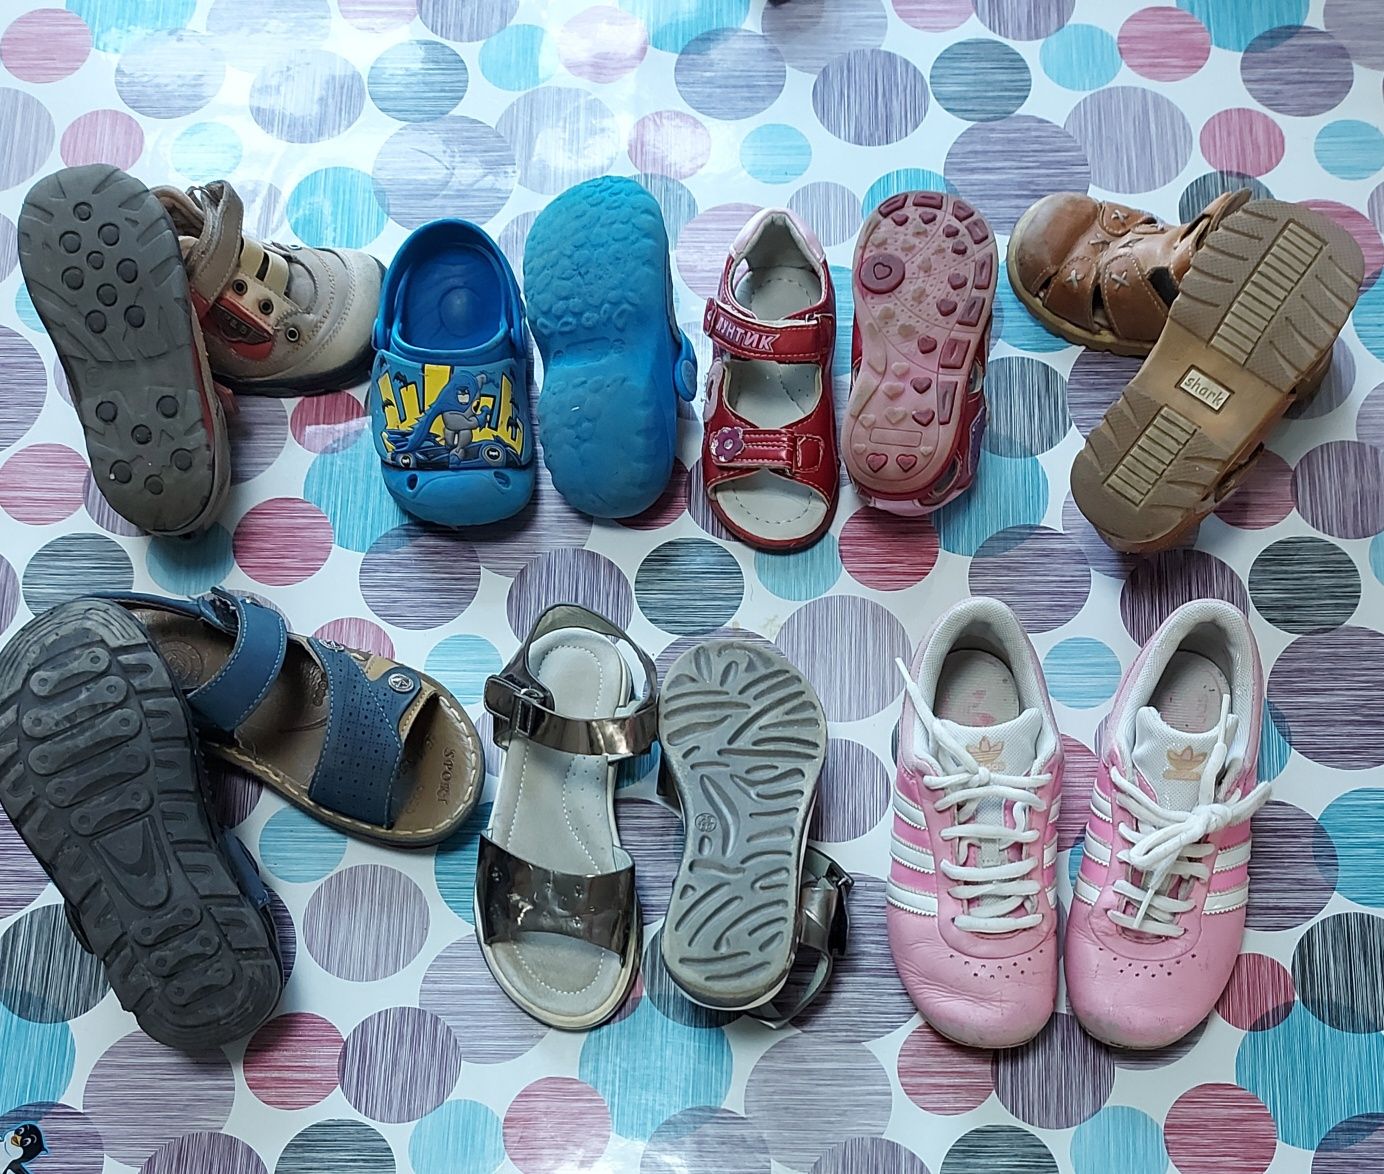 Туфли детские для девочек